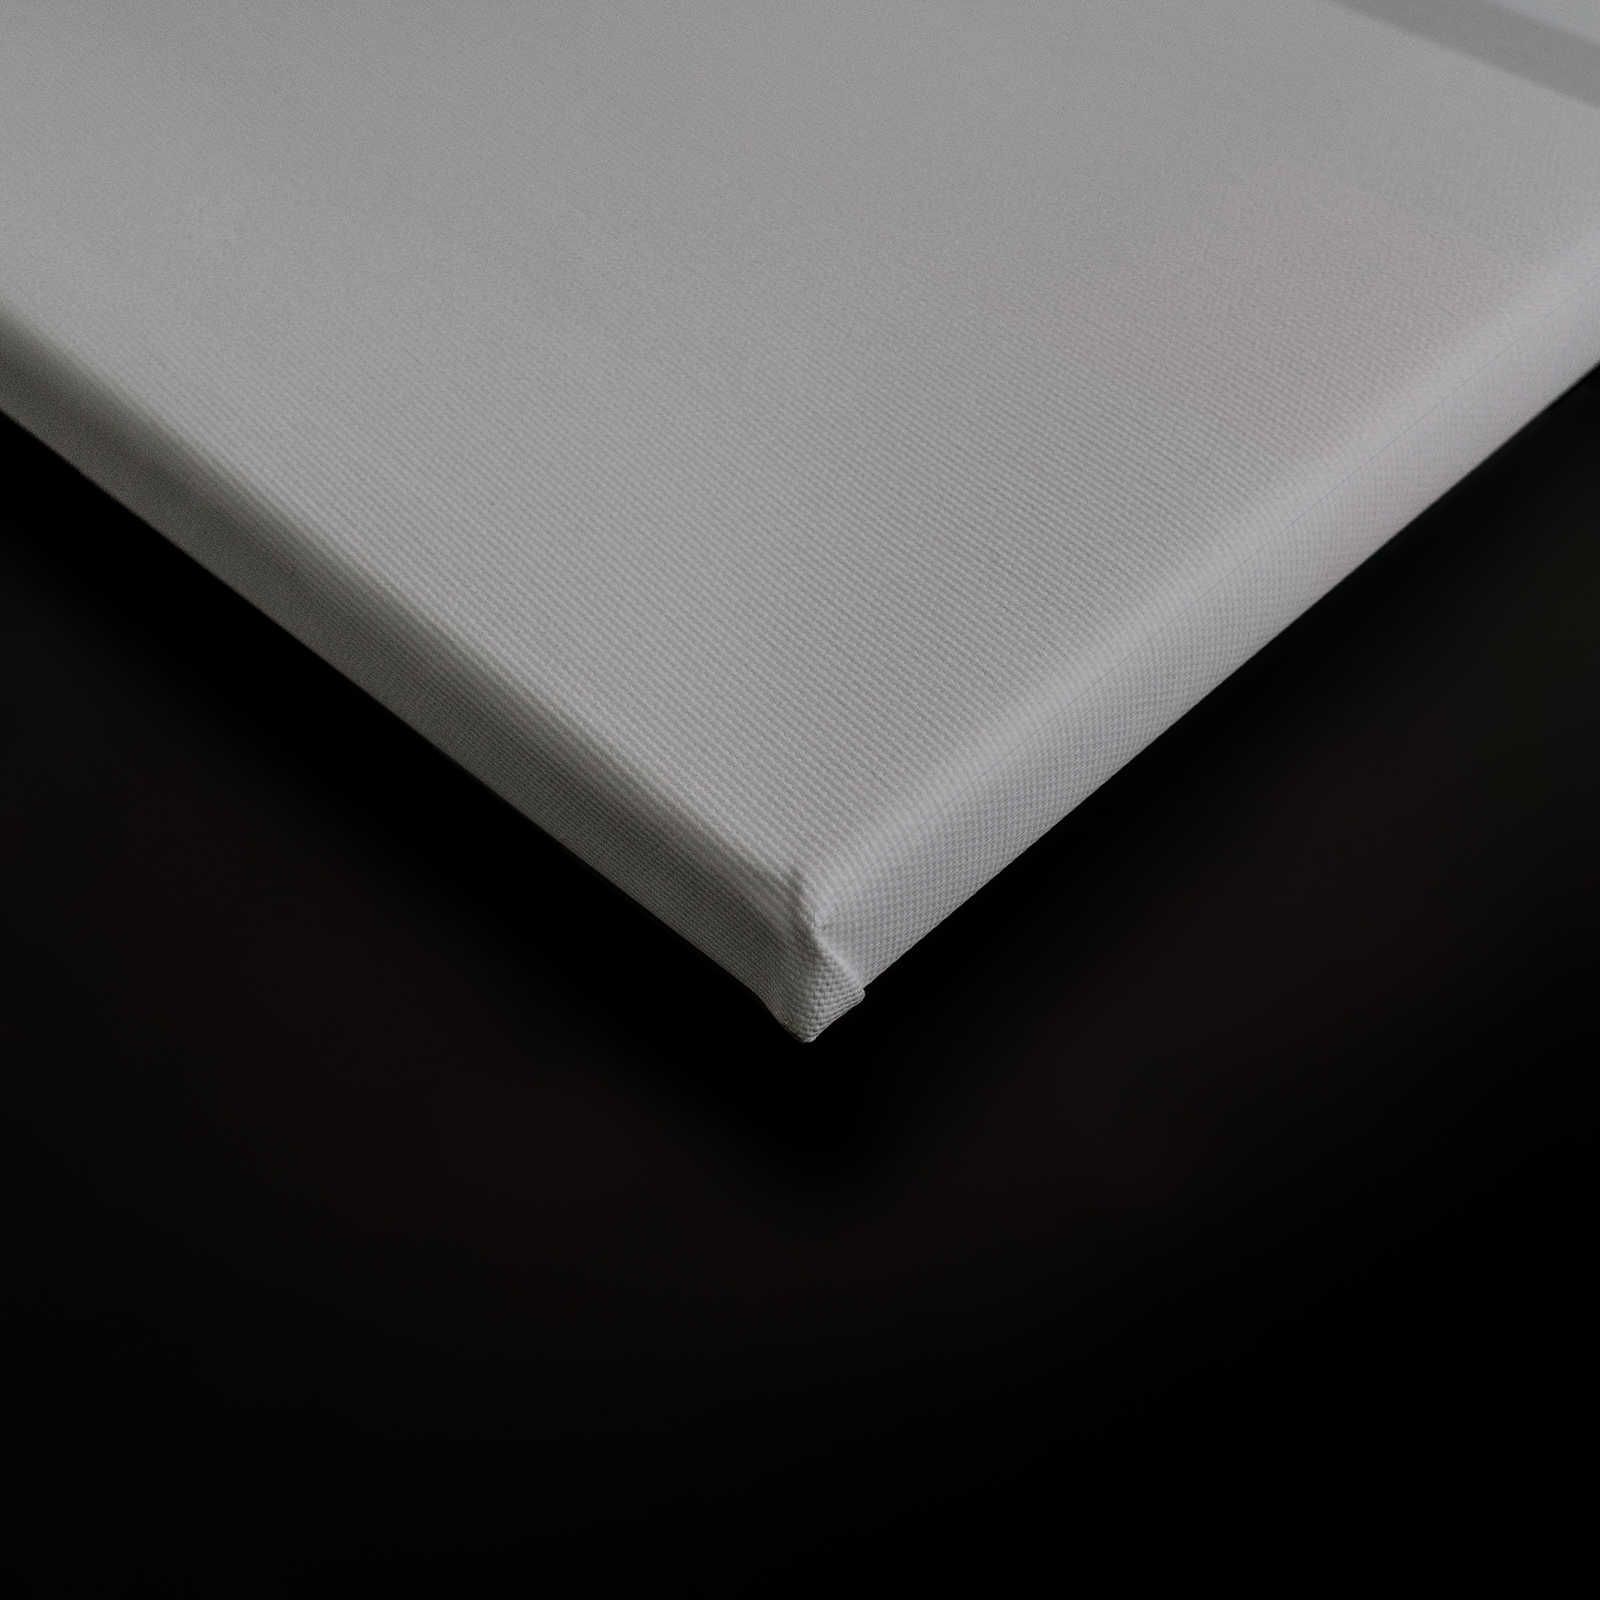             Behind the Wall 1 - Toile 3D gris acier au design minimaliste - 0,90 m x 0,60 m
        